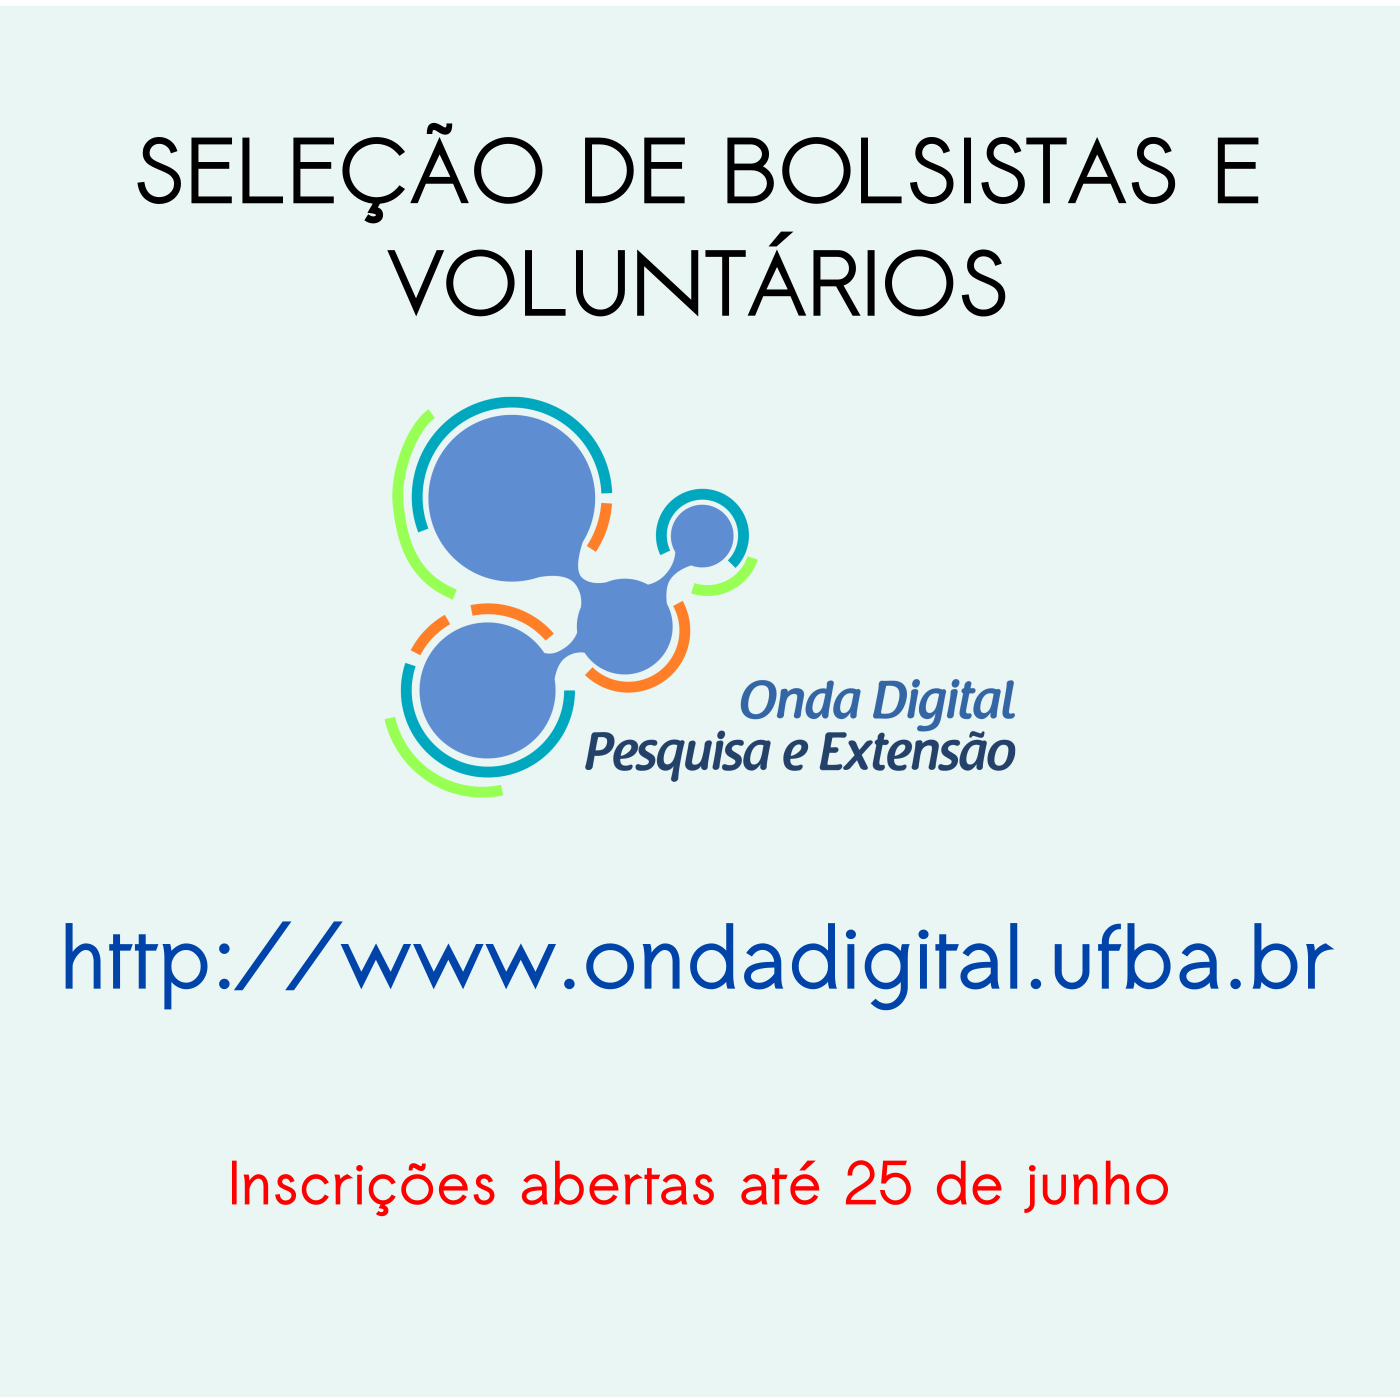 Grupo de Pesquisa e Extensão “Onda Digital” seleciona bolsistas e voluntários